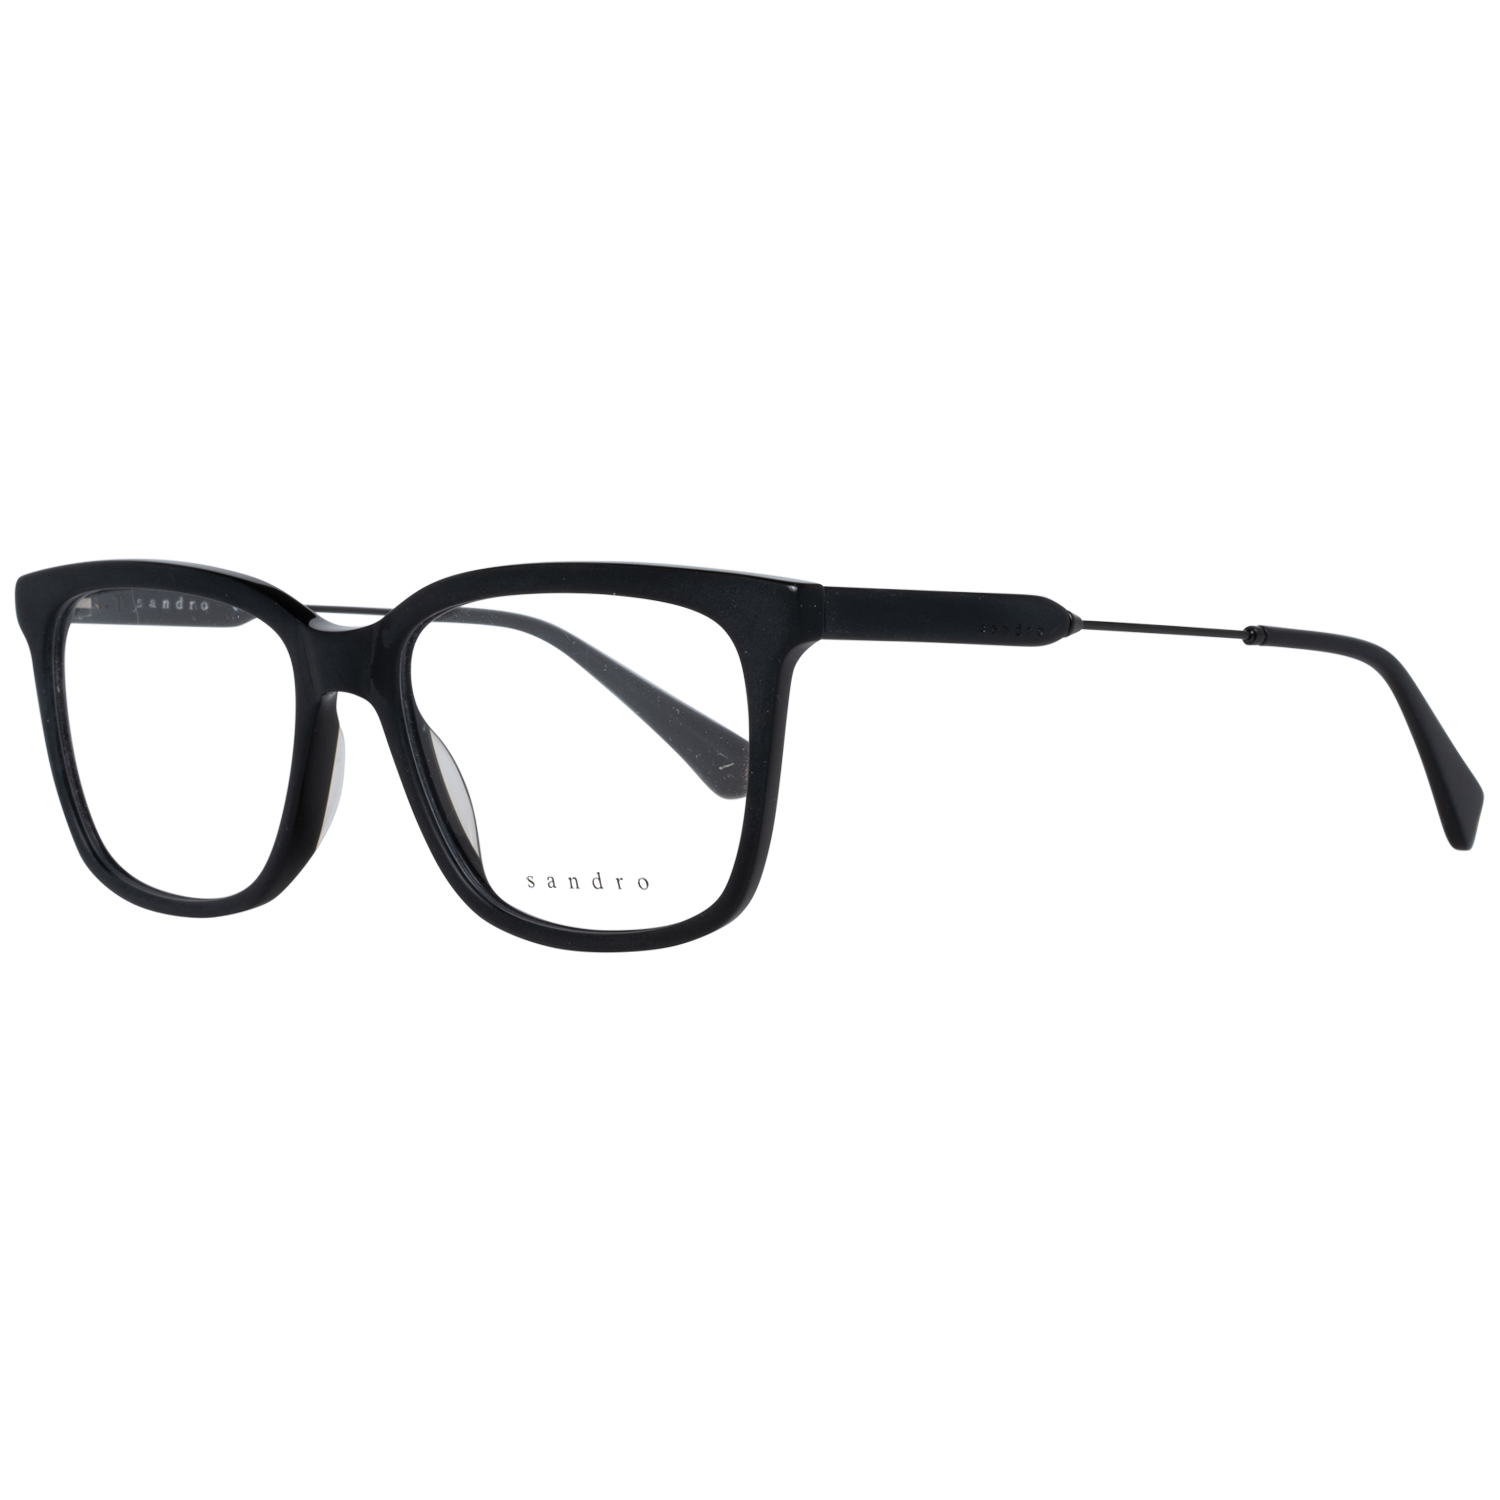 Sandro Frames Sandro Optical Frame SD1011 001 53 Eyeglasses Eyewear UK USA Australia 